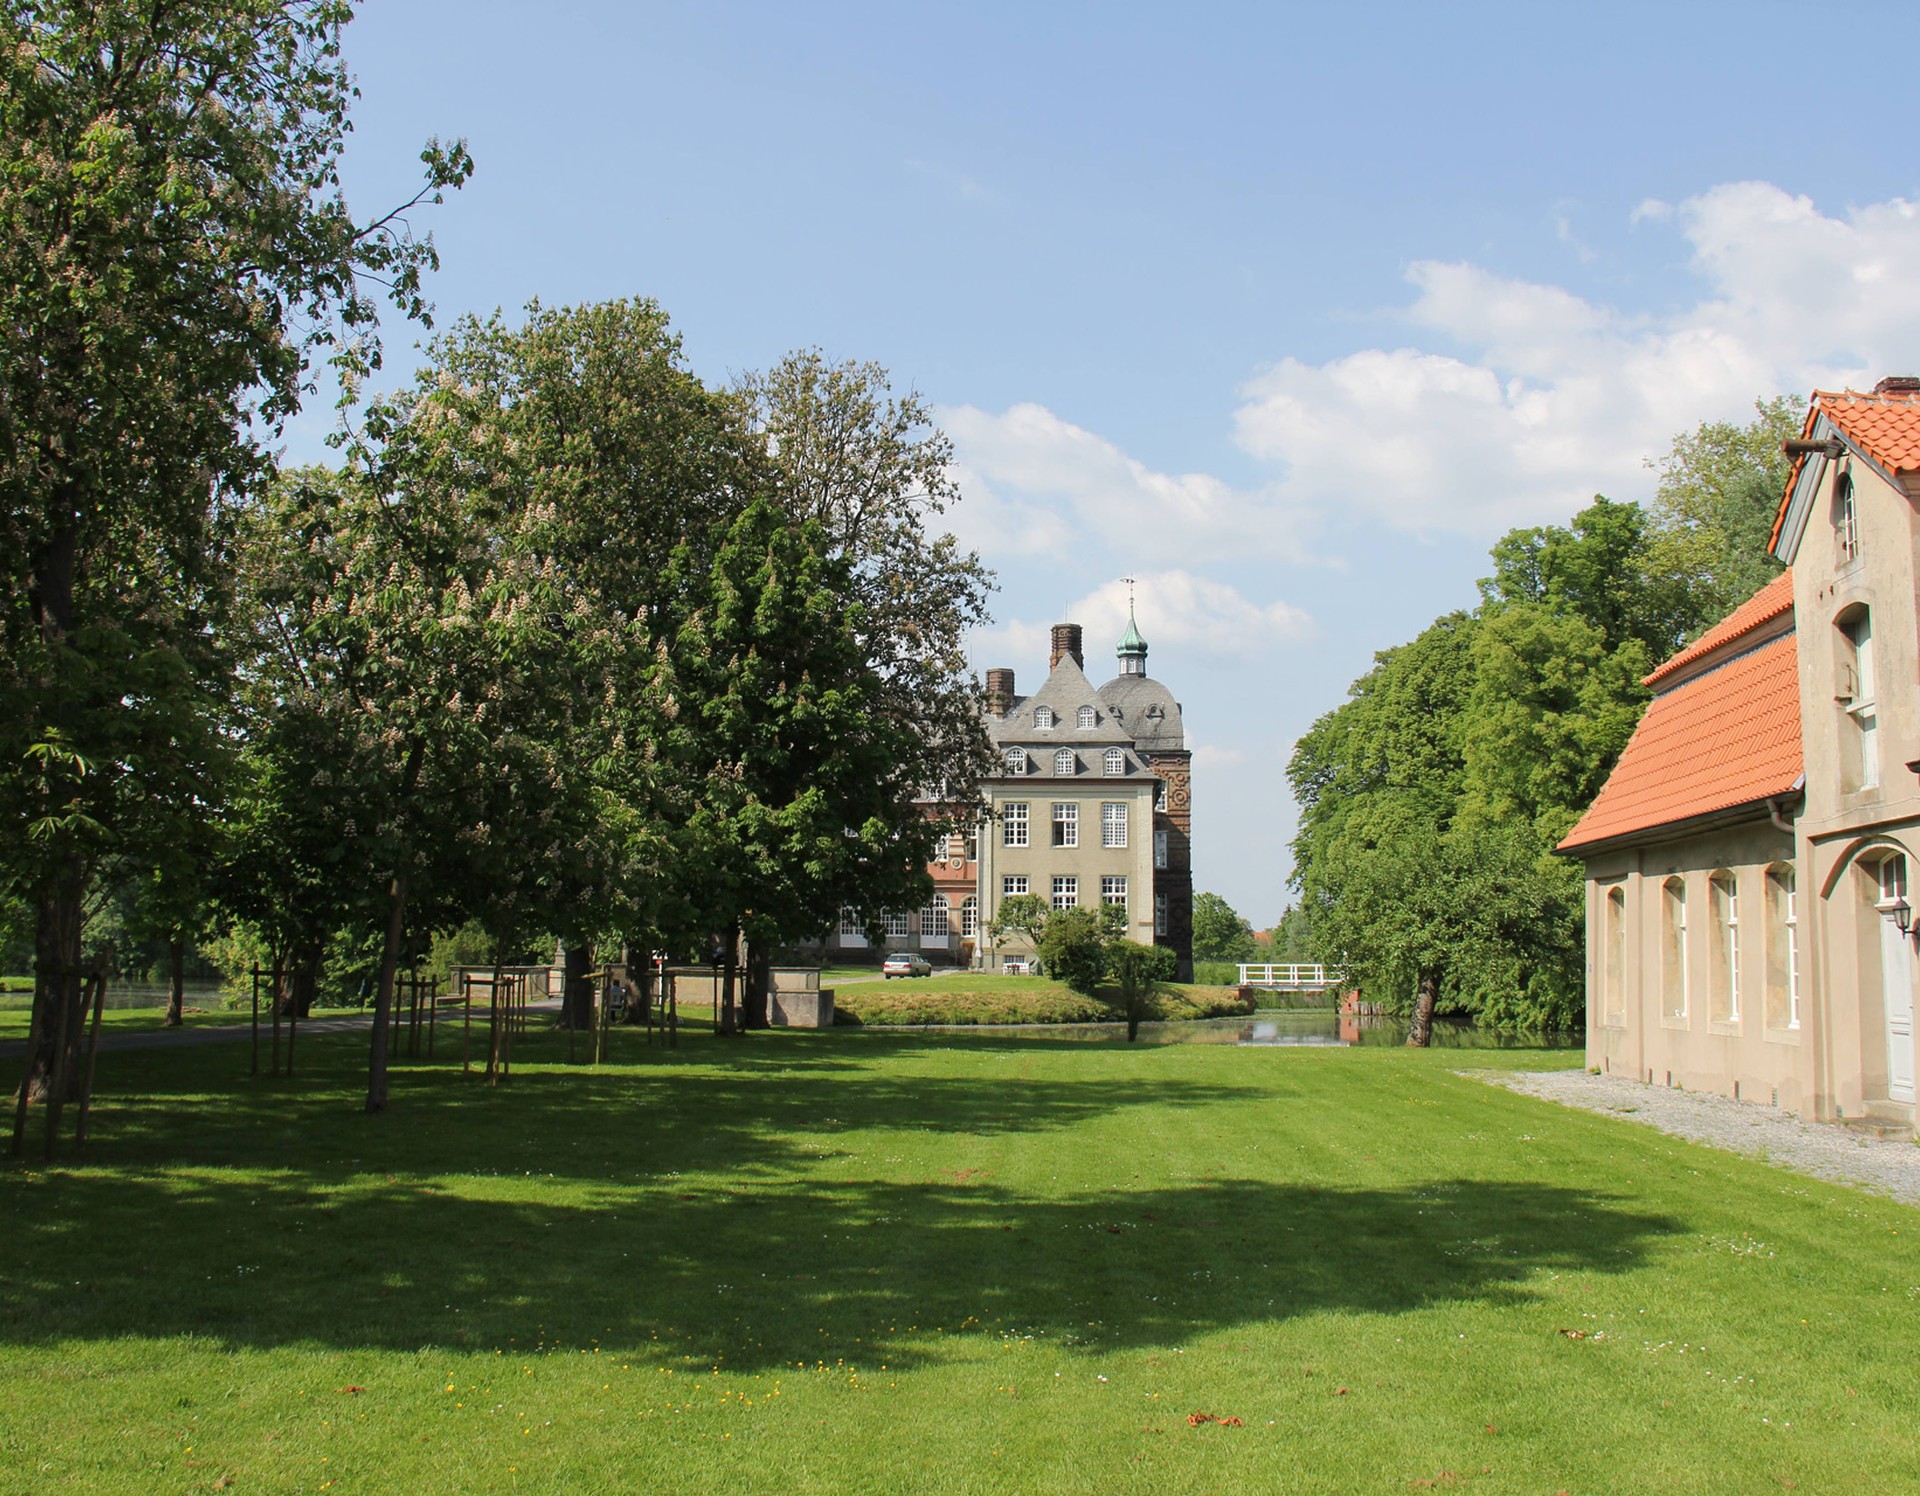 Blick von der Vorburg auf das Schloss Hovestadt. Rechts steht eines der einstöckigen Wirtschaftsgebäude. Durch die Vorburg führt eine Kastanienallee zum Schloss.